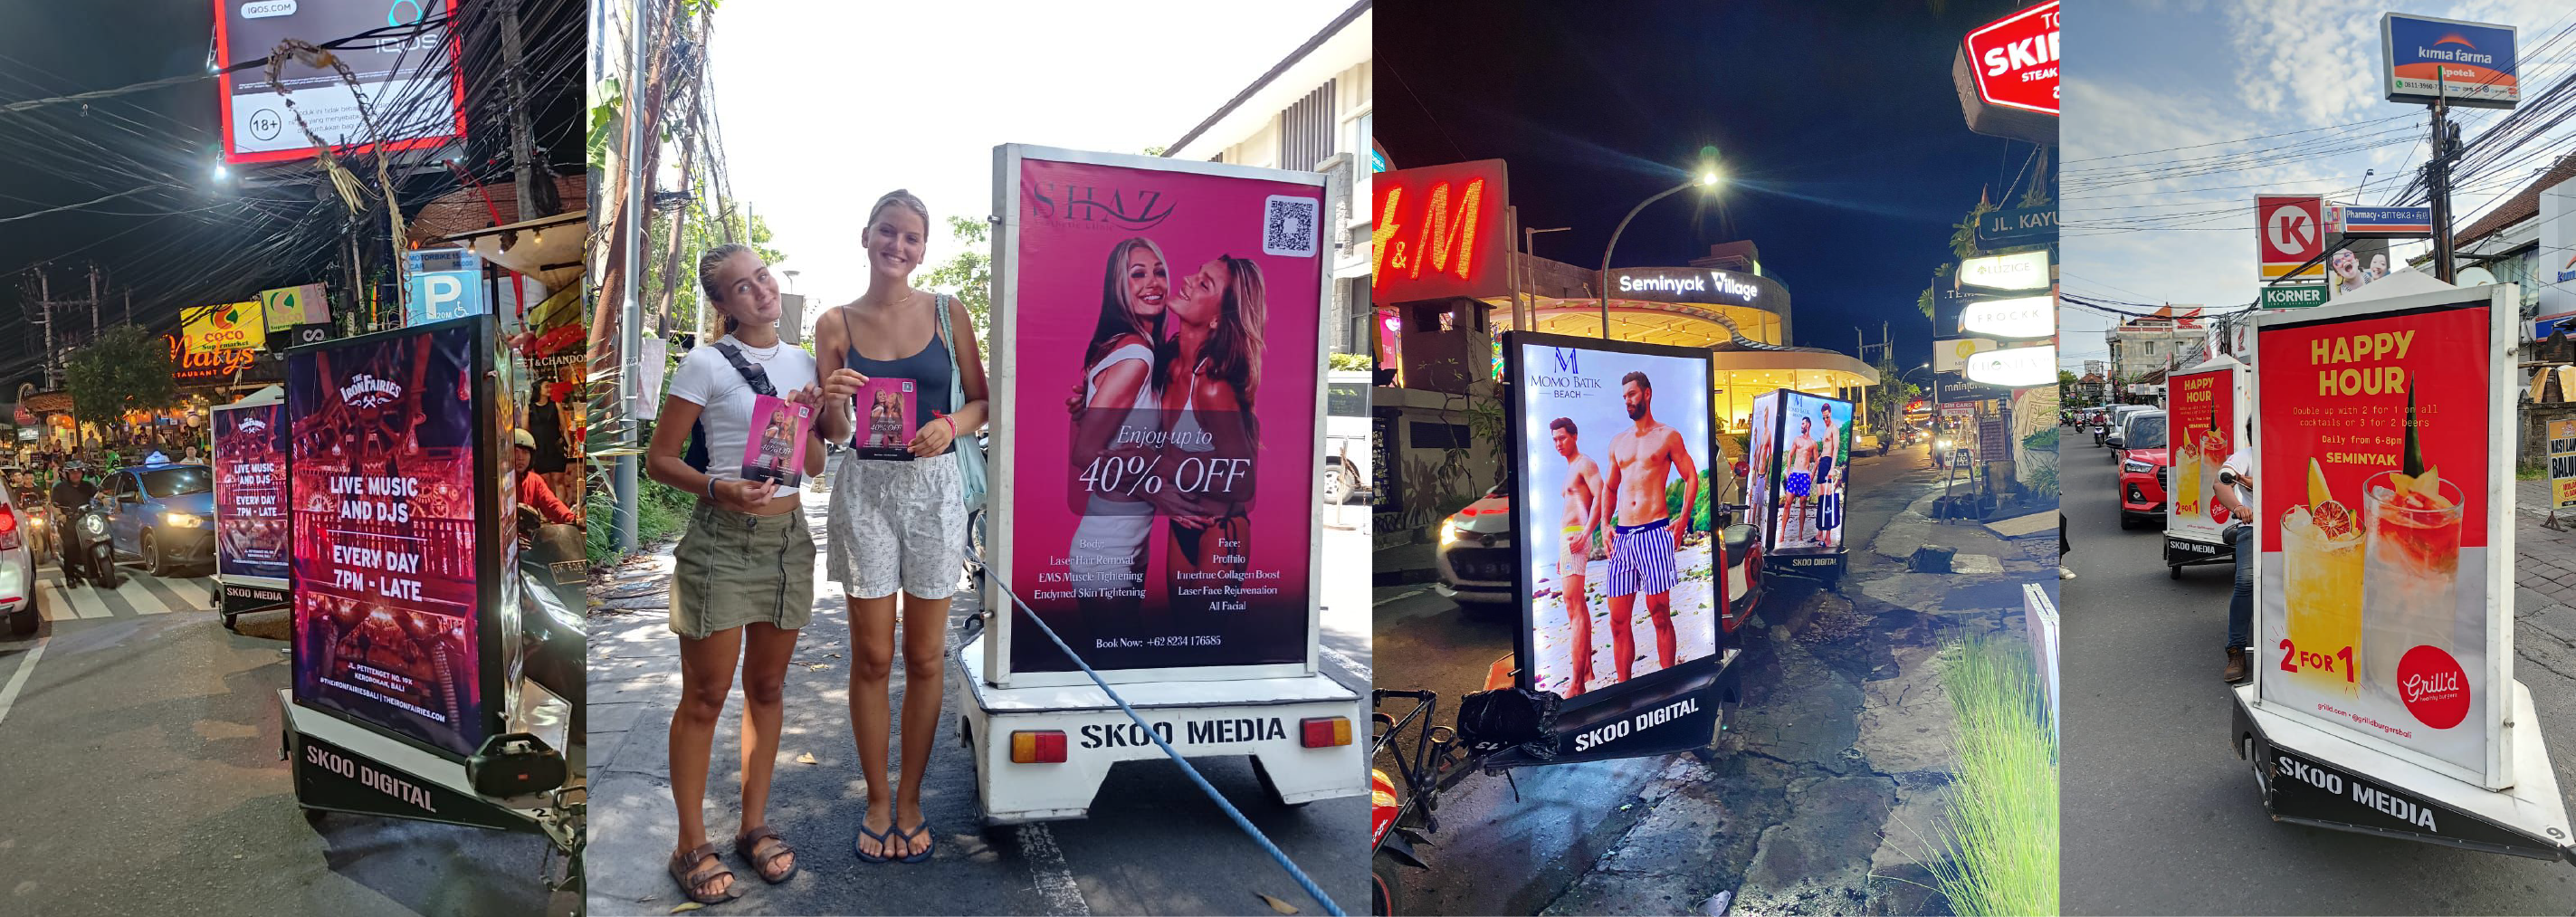 skoo media's mobile advertising vehicles and satisfied customers